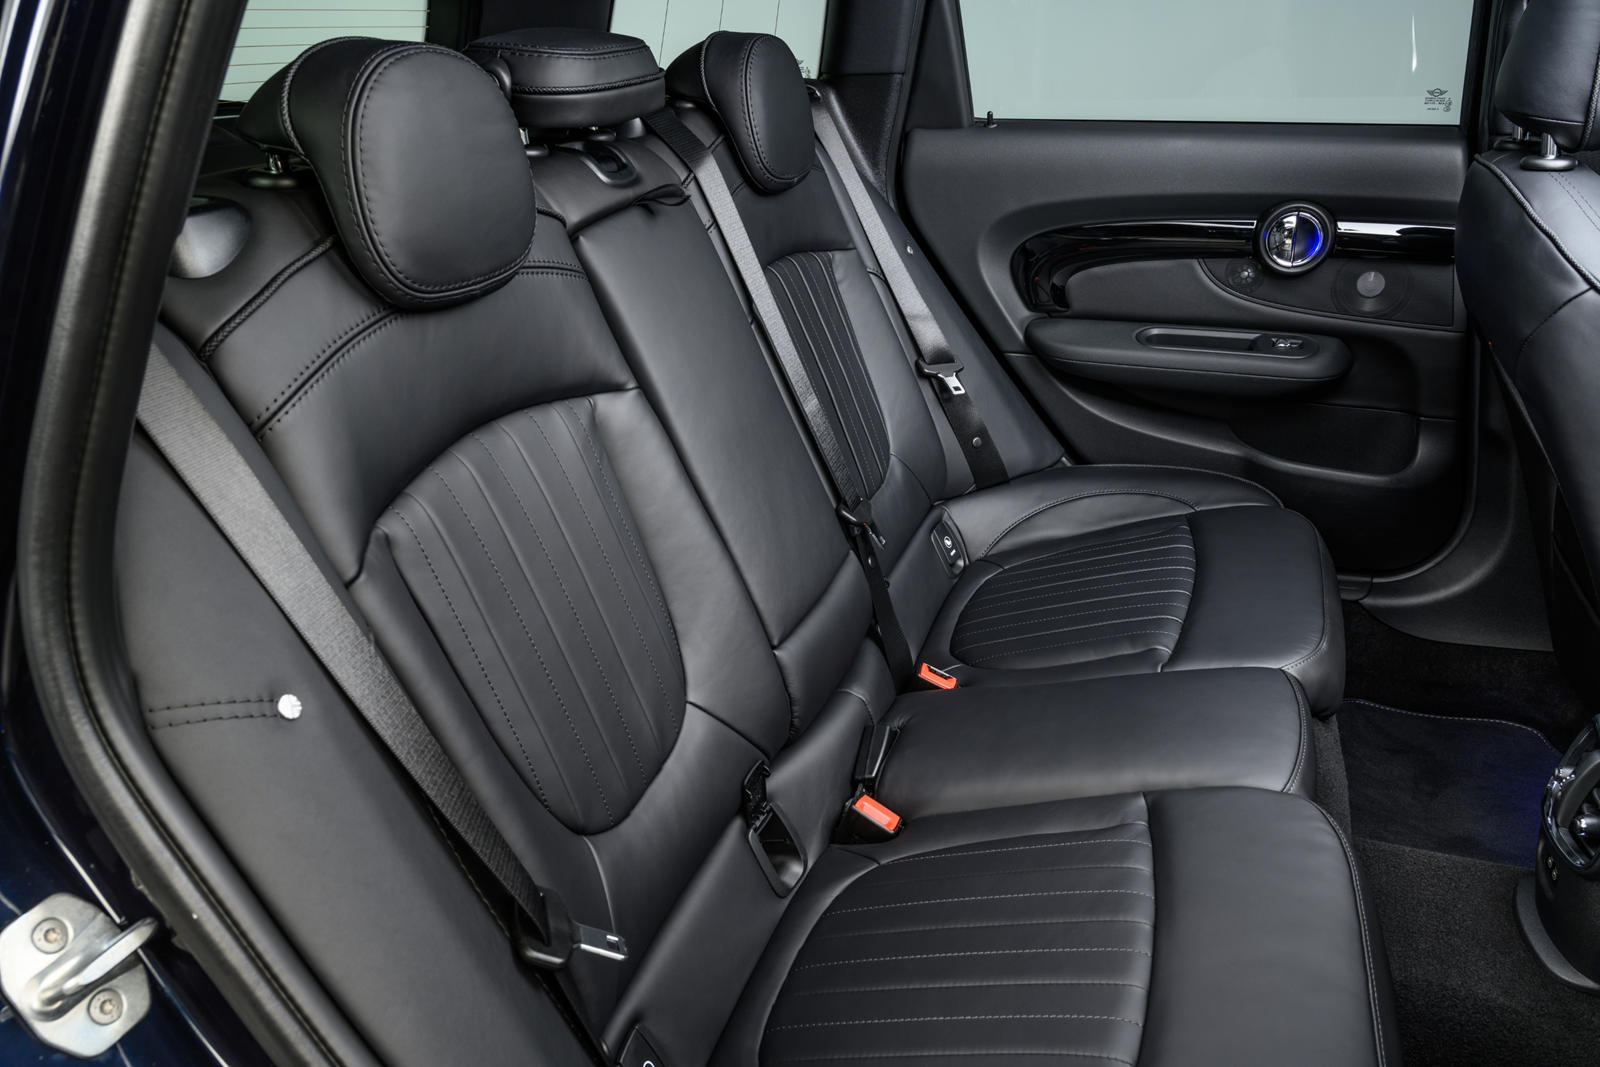 Mini Cooper interior - Rear Seats